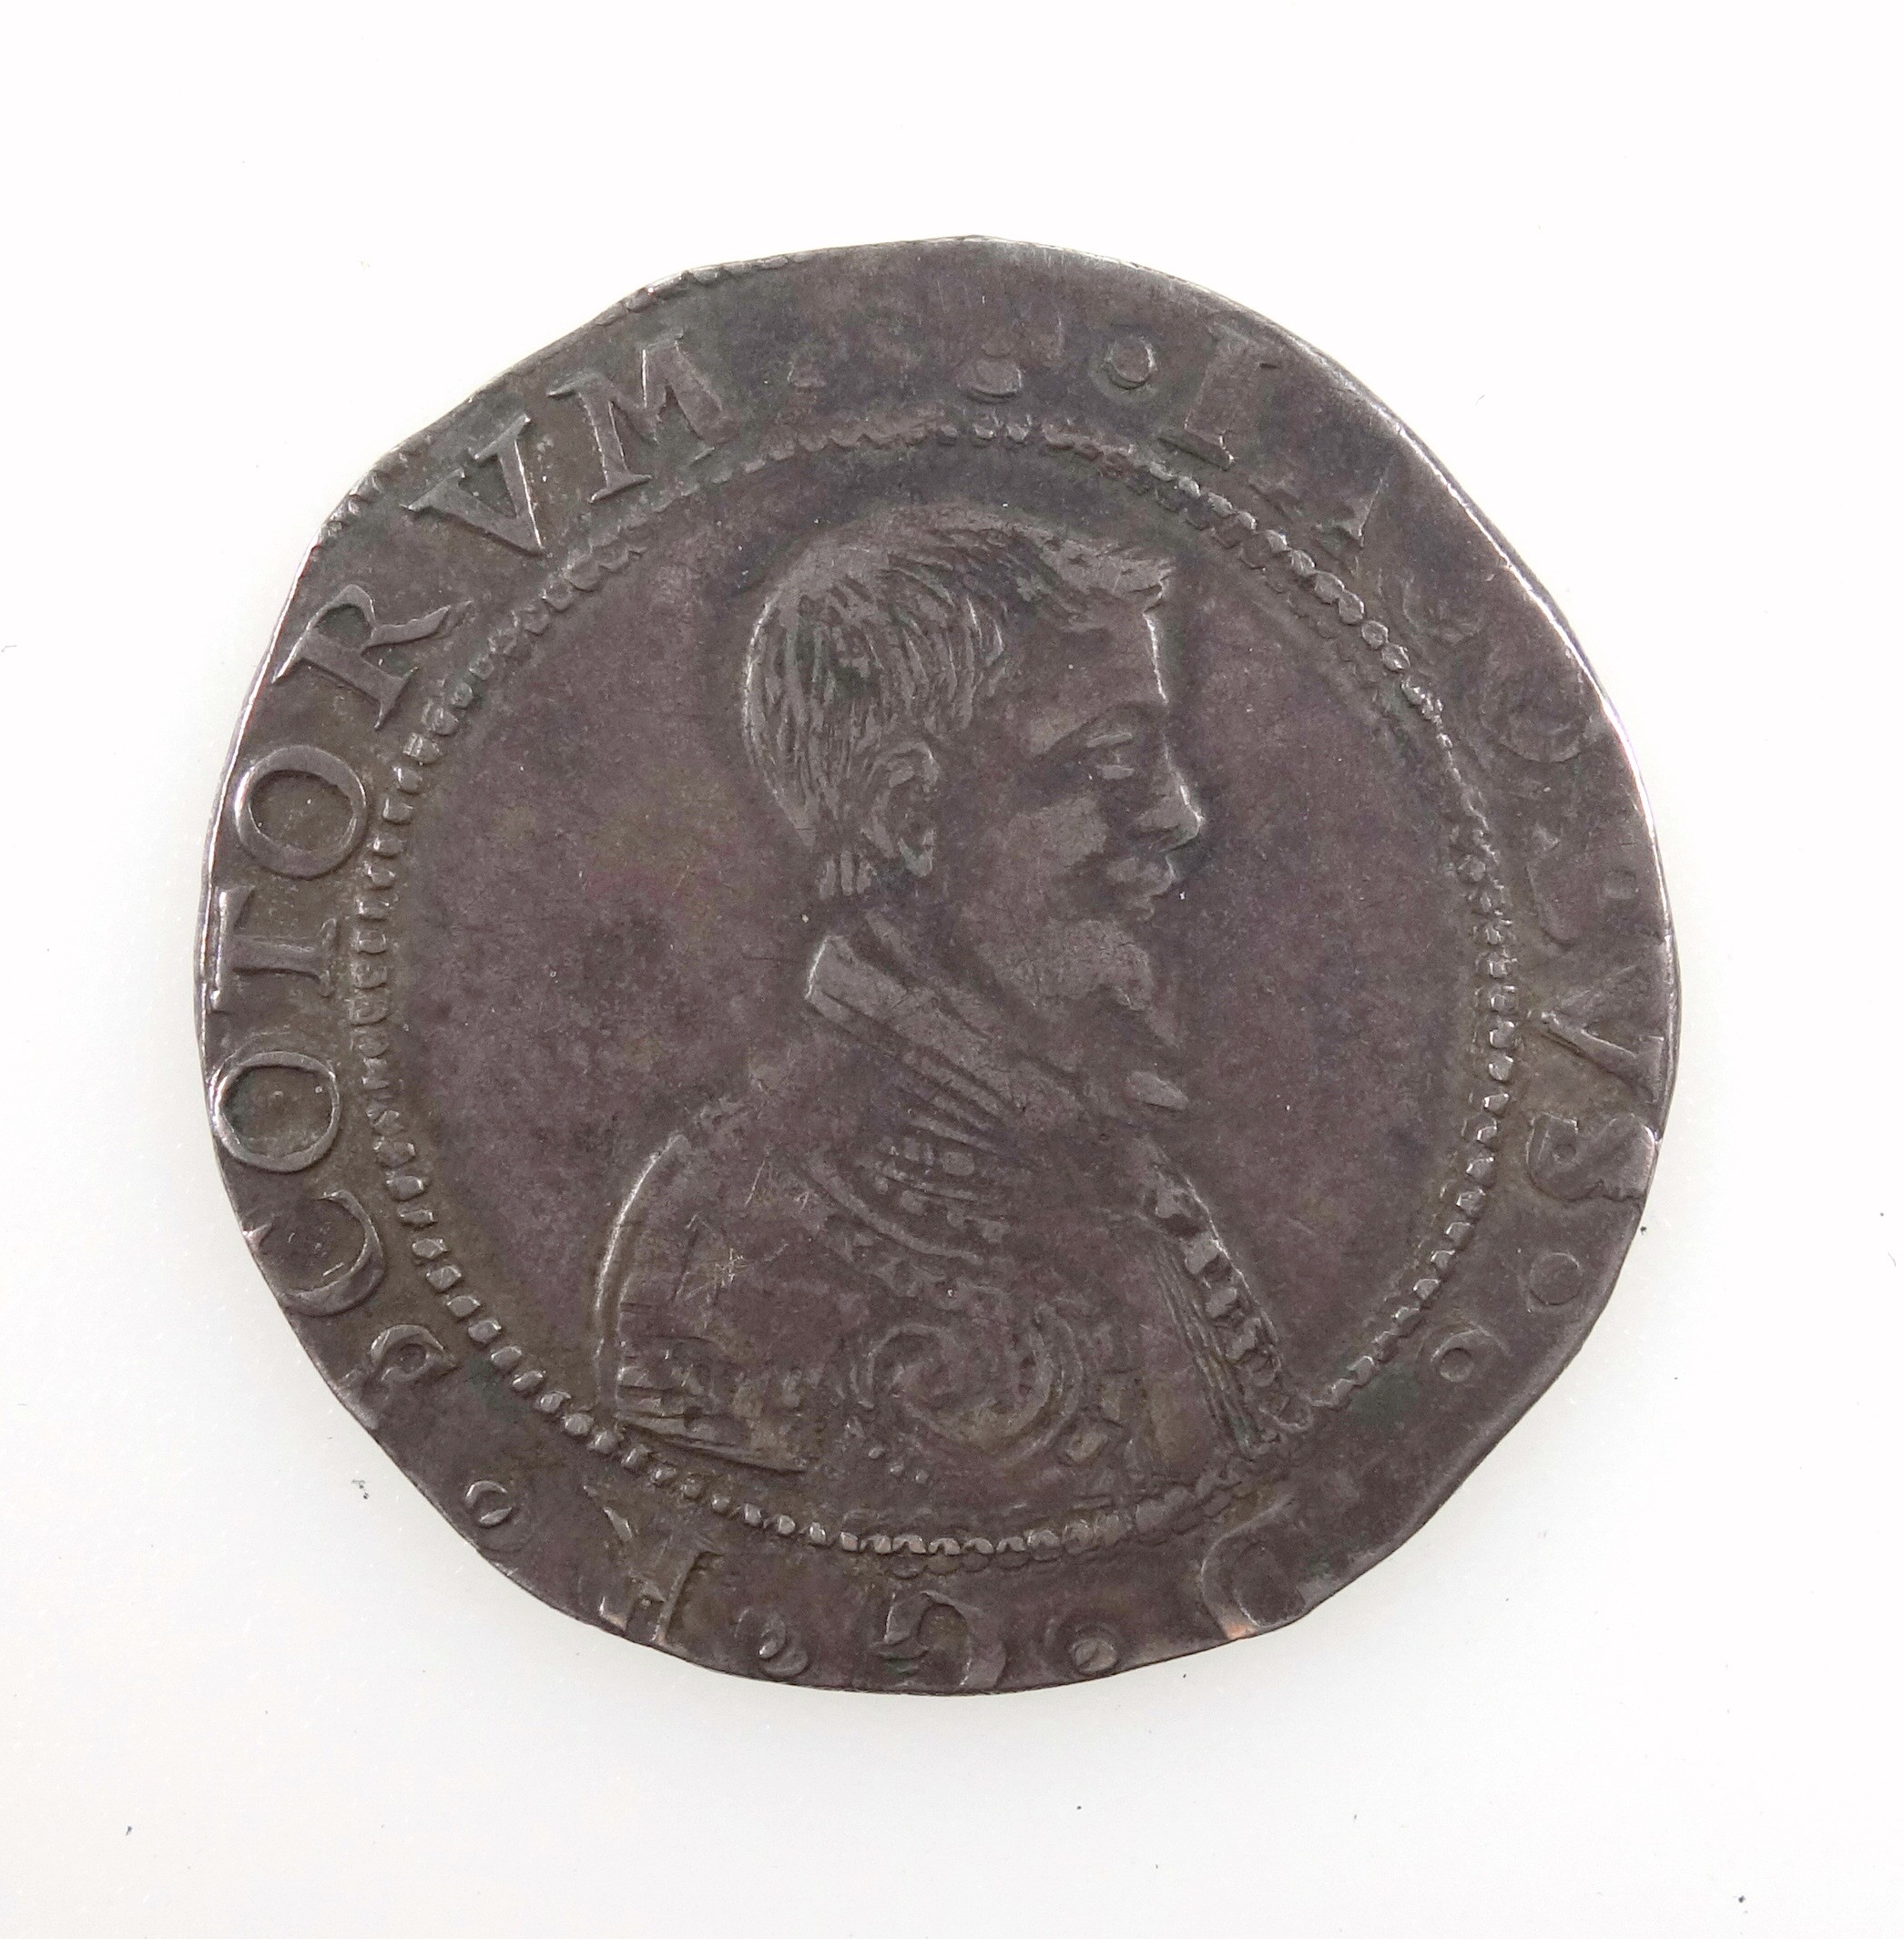 Scotland James VI 10 shillings, m.m. rose, 1595, f.